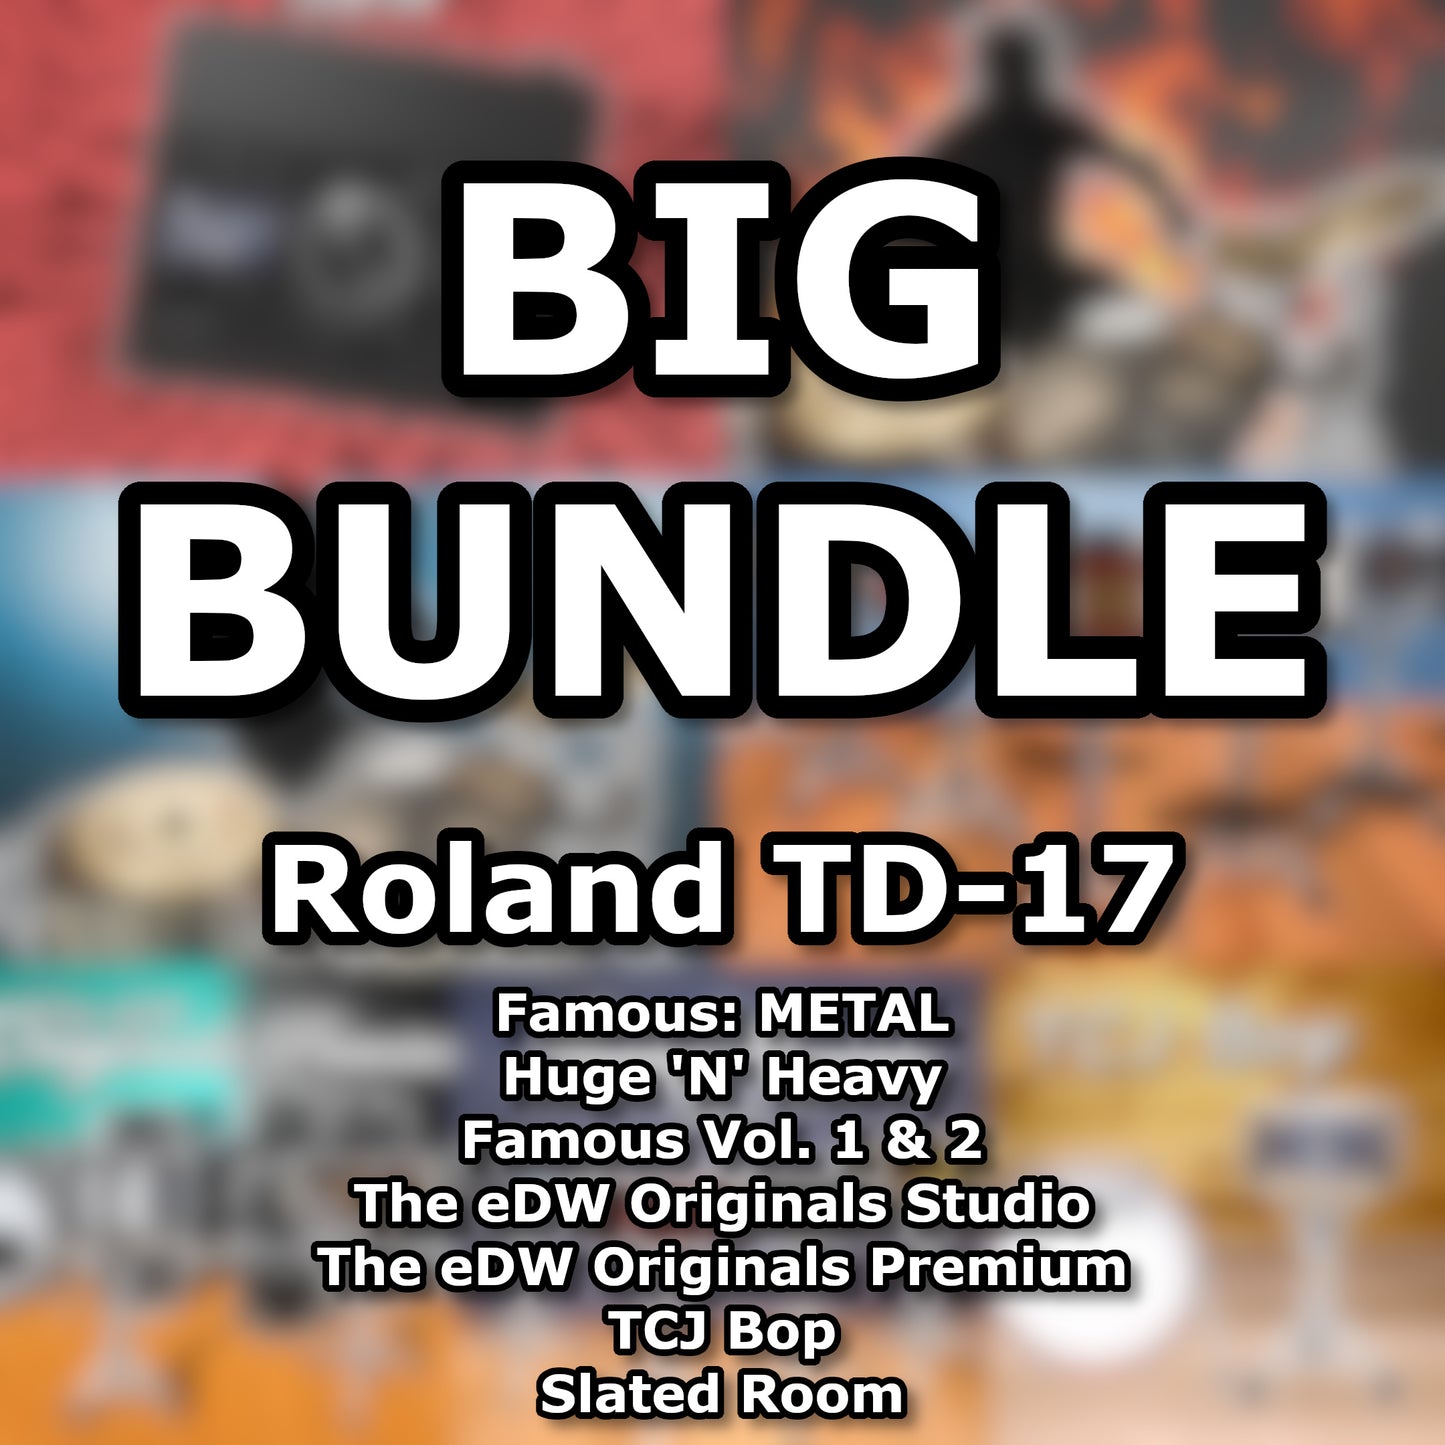 The eDW BIG BUNDLE TD-17